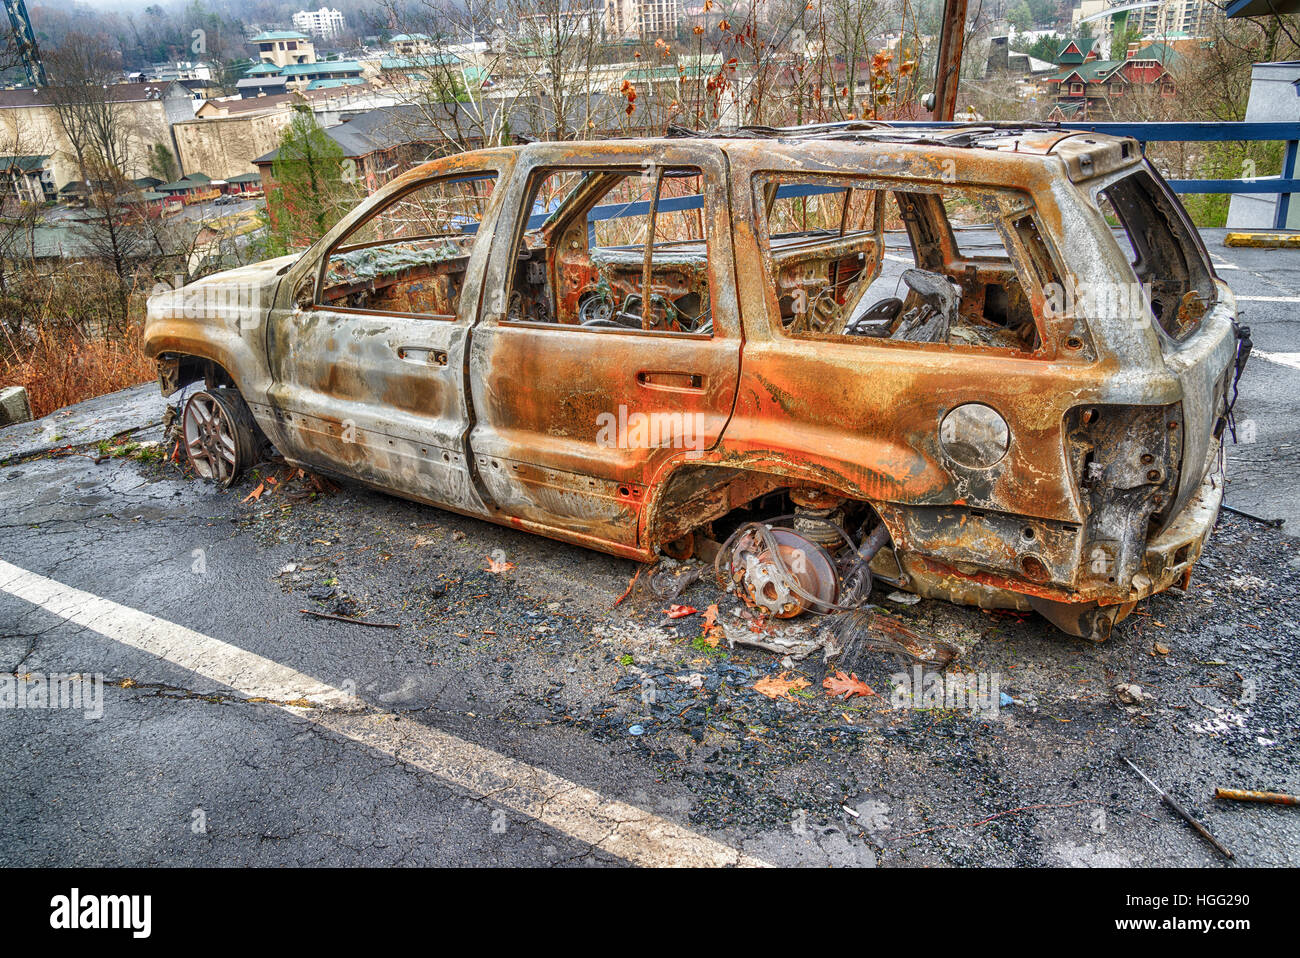 GATLINBURG, Tennessee/USA - 14 décembre 2016 : une voiture attend que les équipes de nettoyage à la suite d'un violent incendie de forêt qui a détruit une partie Banque D'Images